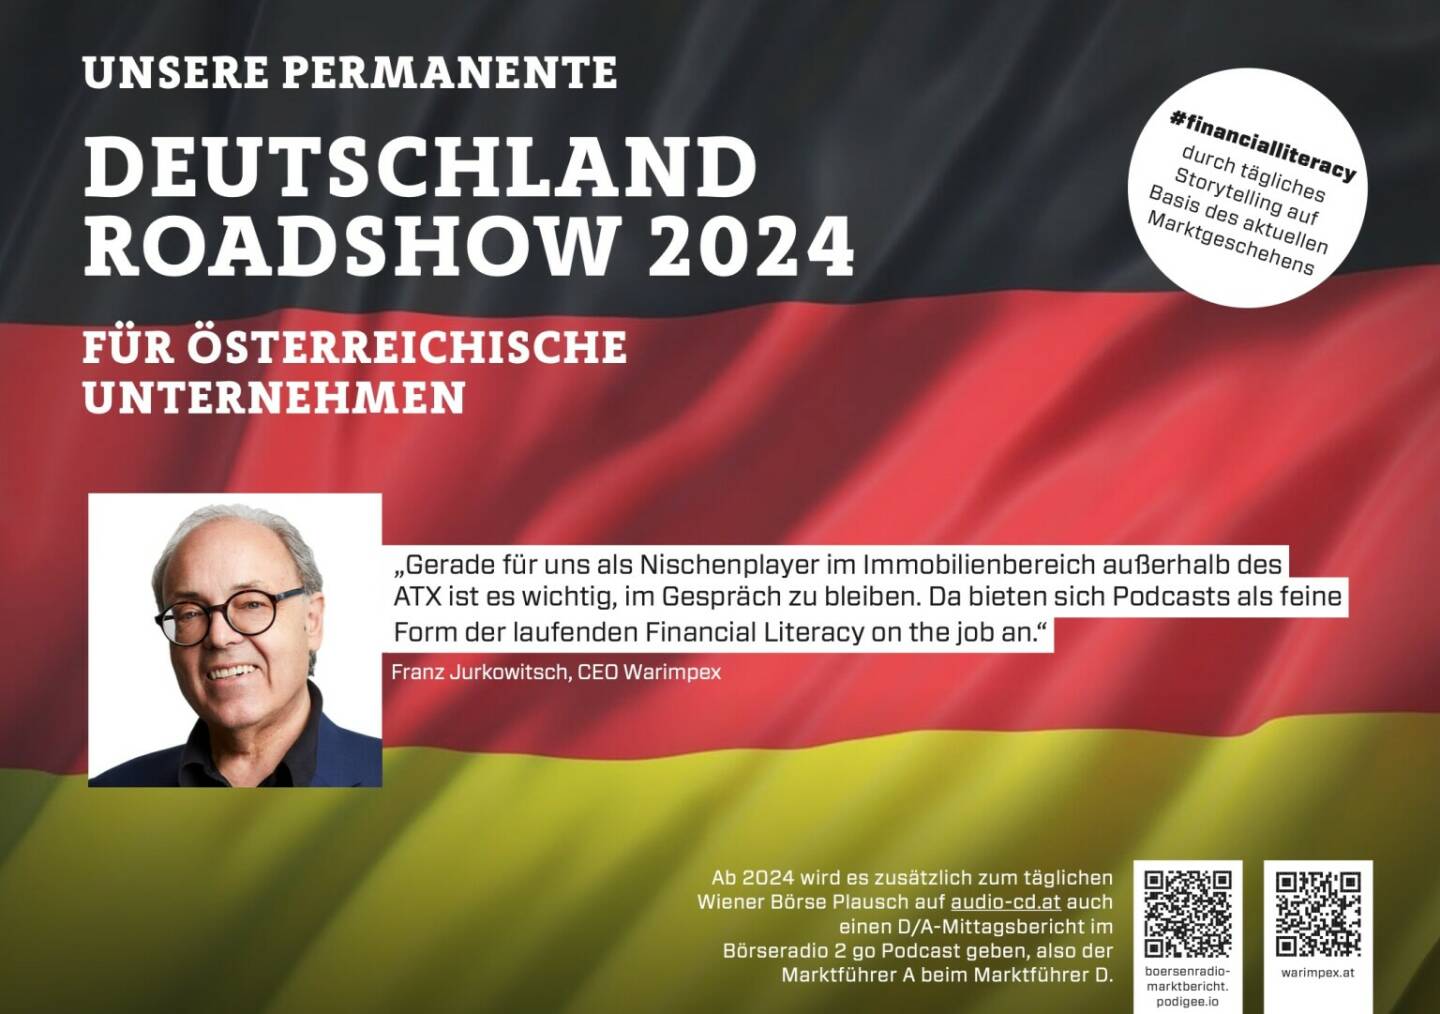 Franz Jurkowitsch mit Warimpex 2024 mit uns auf Deutschlandroadshow für https://boersenradio-marktbericht.podigee.io